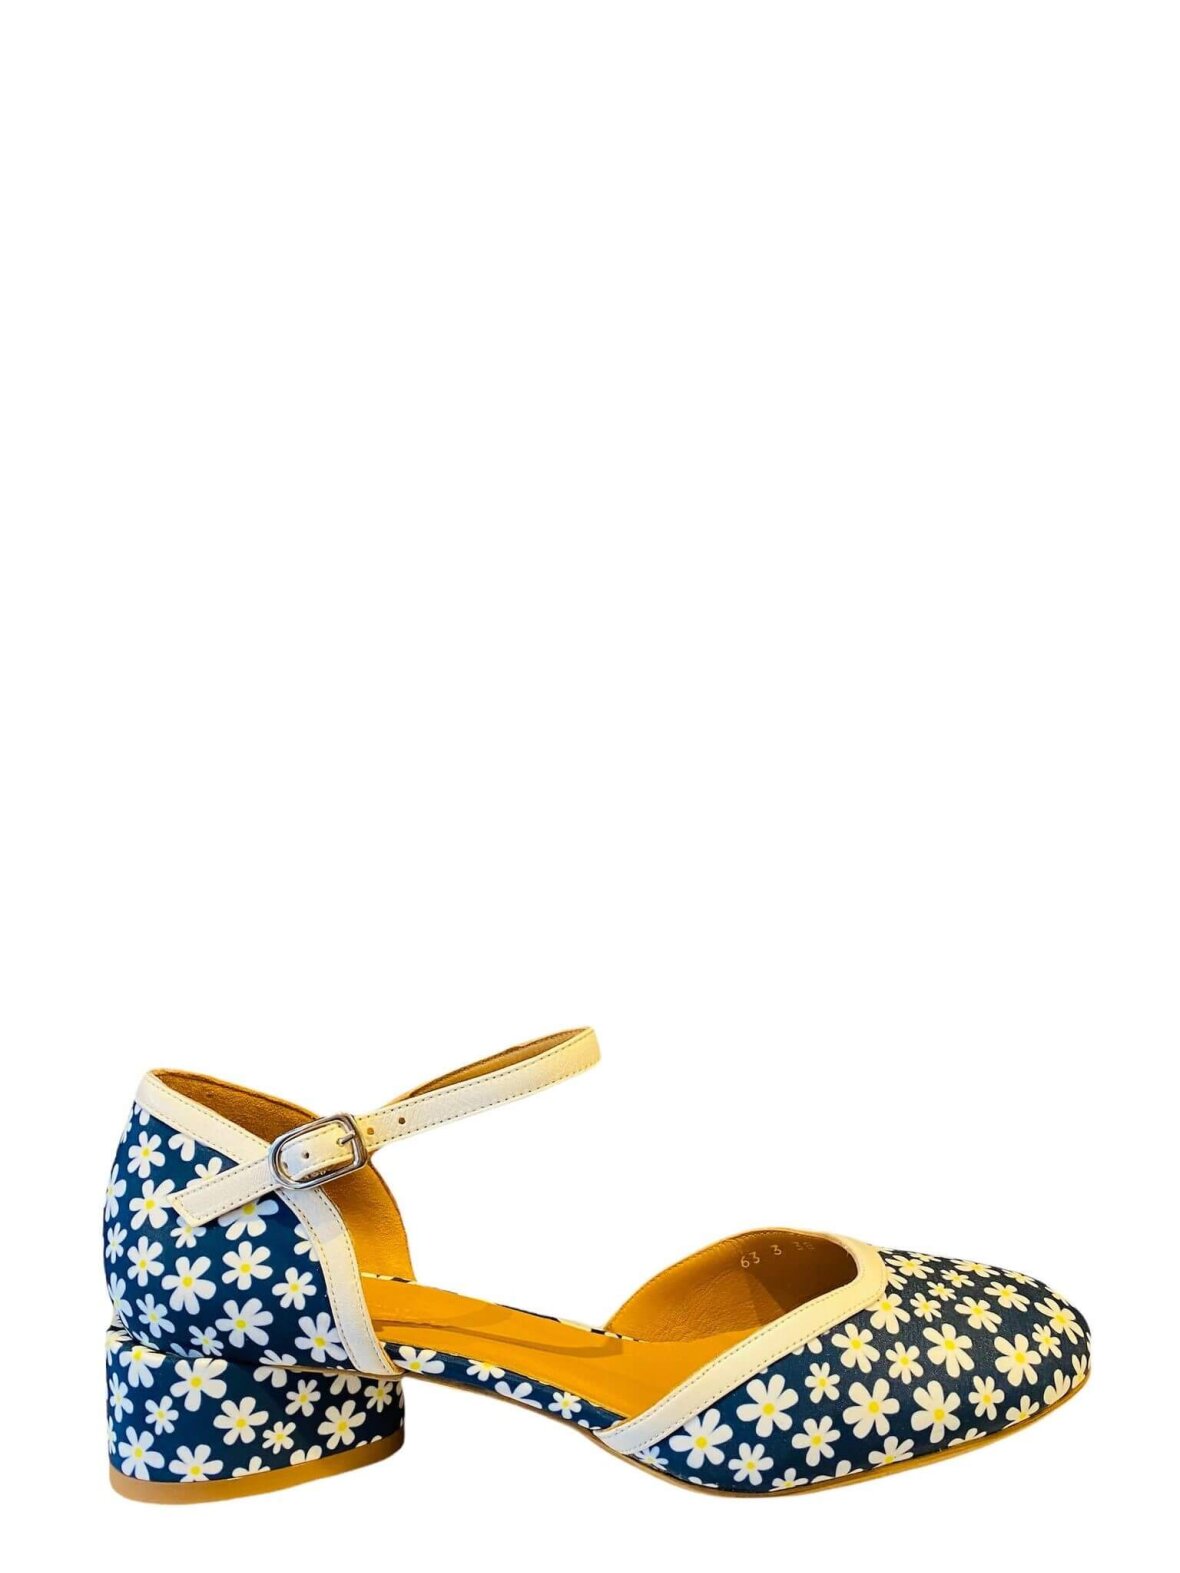 Køb sko fra i blomster mønsteret tekstil med navy bund farve hos Helle M